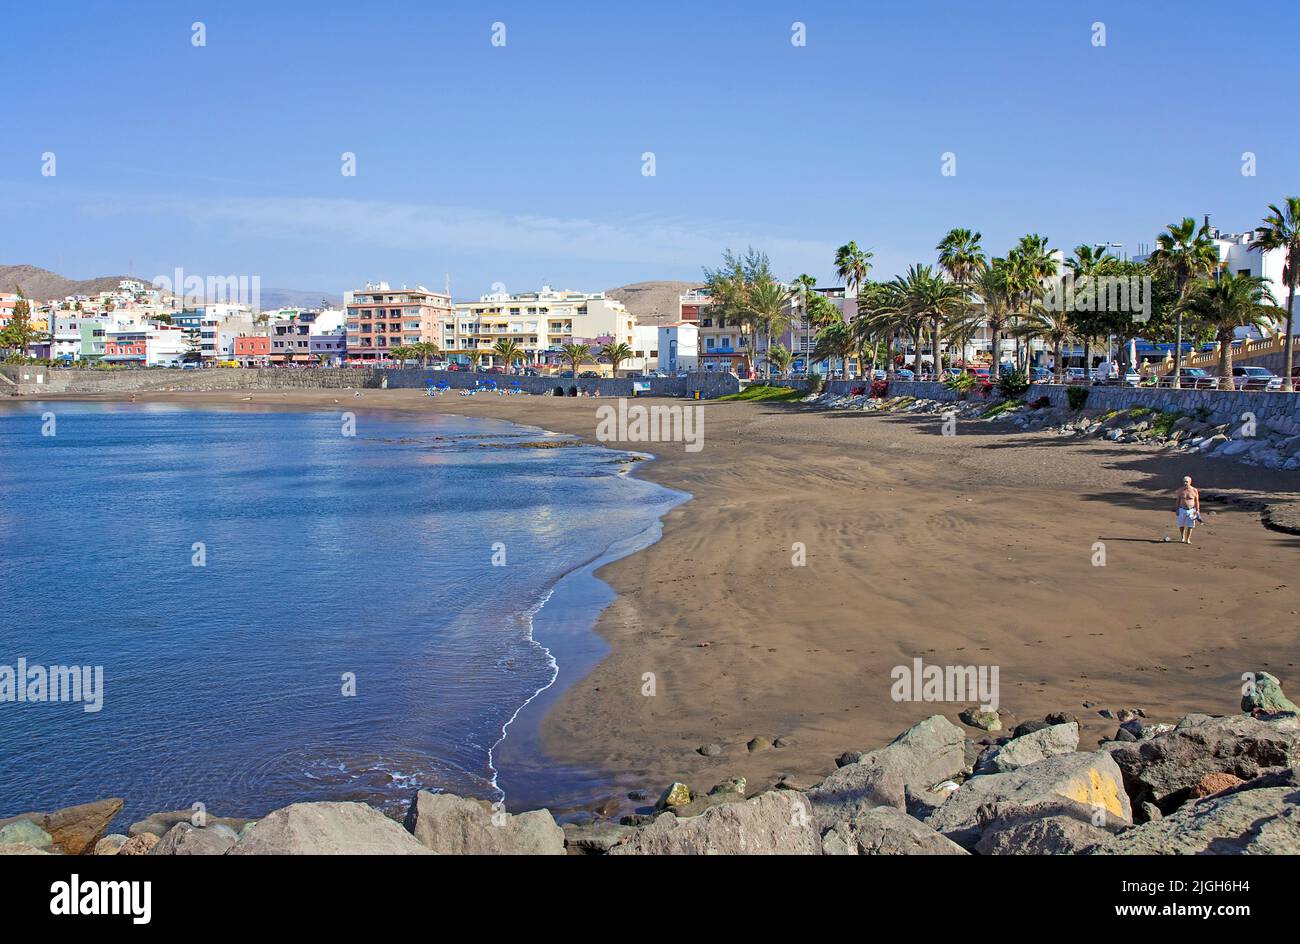 Strand von Arguineguin, Gran Canaria, Kanarische Inseln, Spanien, Europa | Strand von Arguineguin, Gran Canaria, Kanarische Inseln, Spanien, Europa Stockfoto